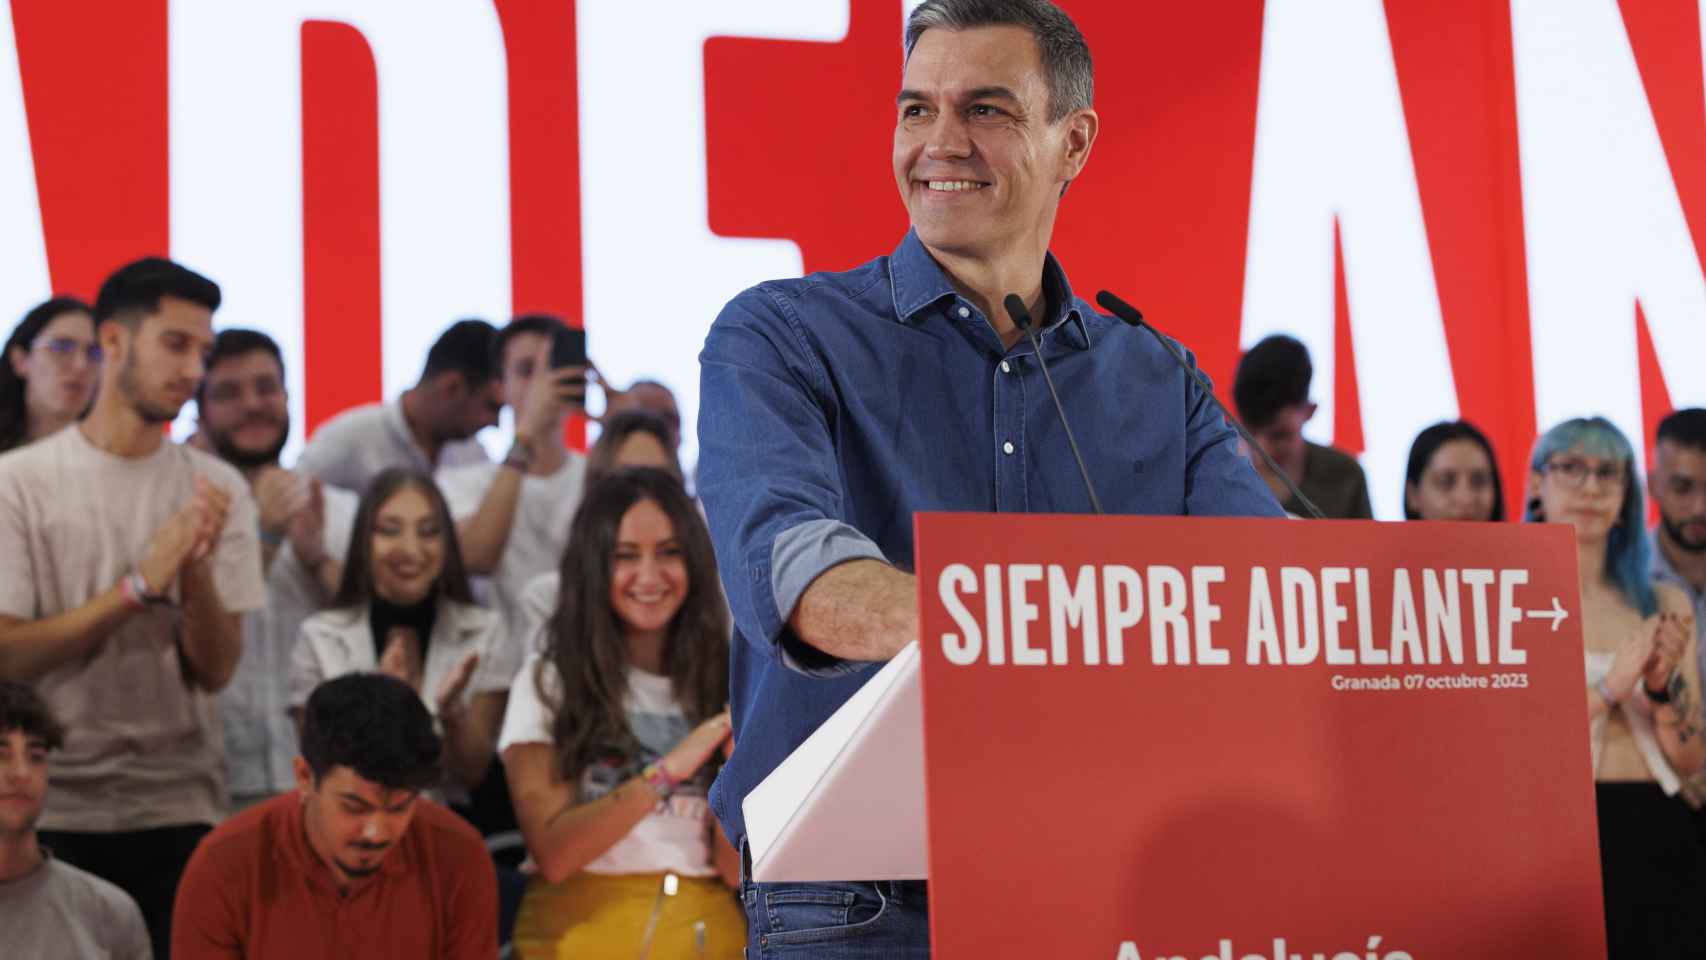 El secretario general del PSOE y presidente del Gobierno en funciones, Pedro Sánchez, durante su participación en un acto público, a 07 de octubre del 2023 en Granada